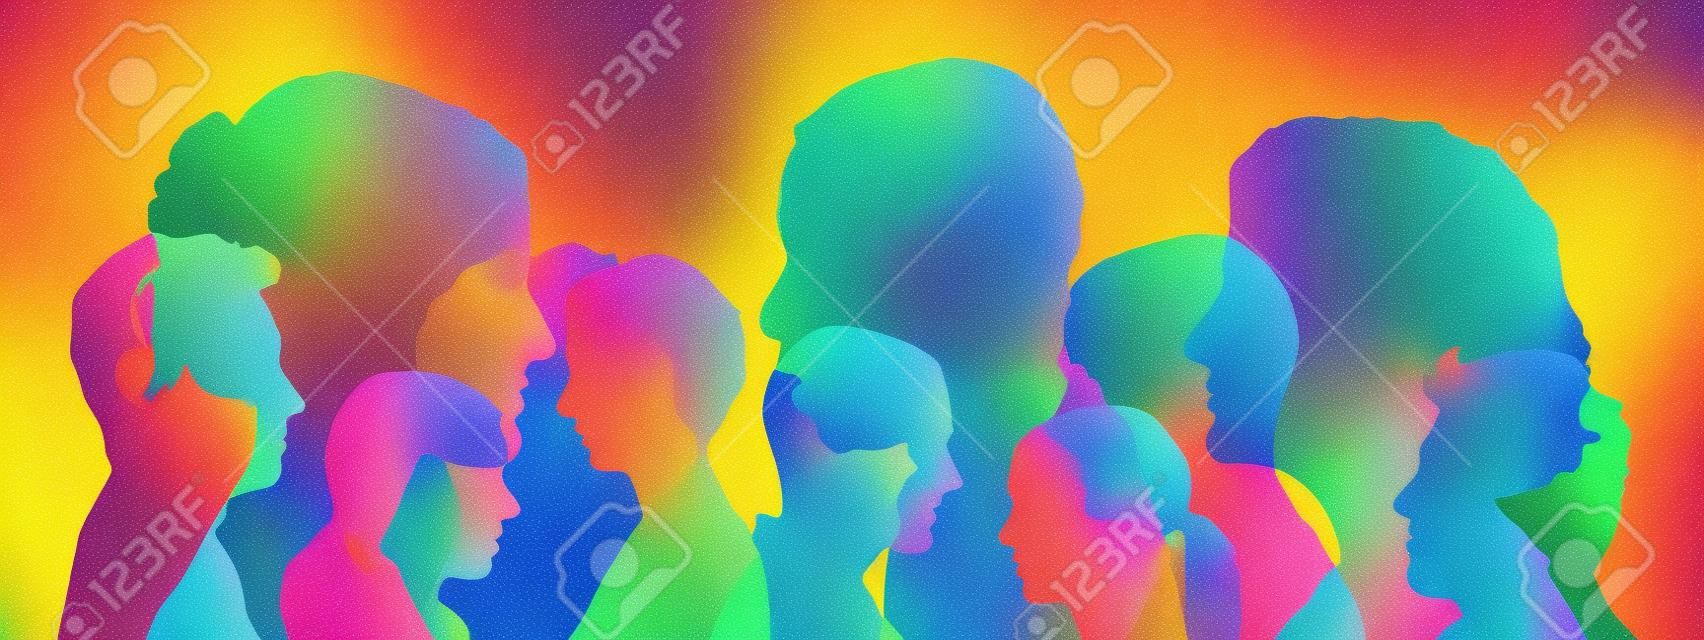 Muitas cabeças equipe como ilustração em diferentes cores brilhantes